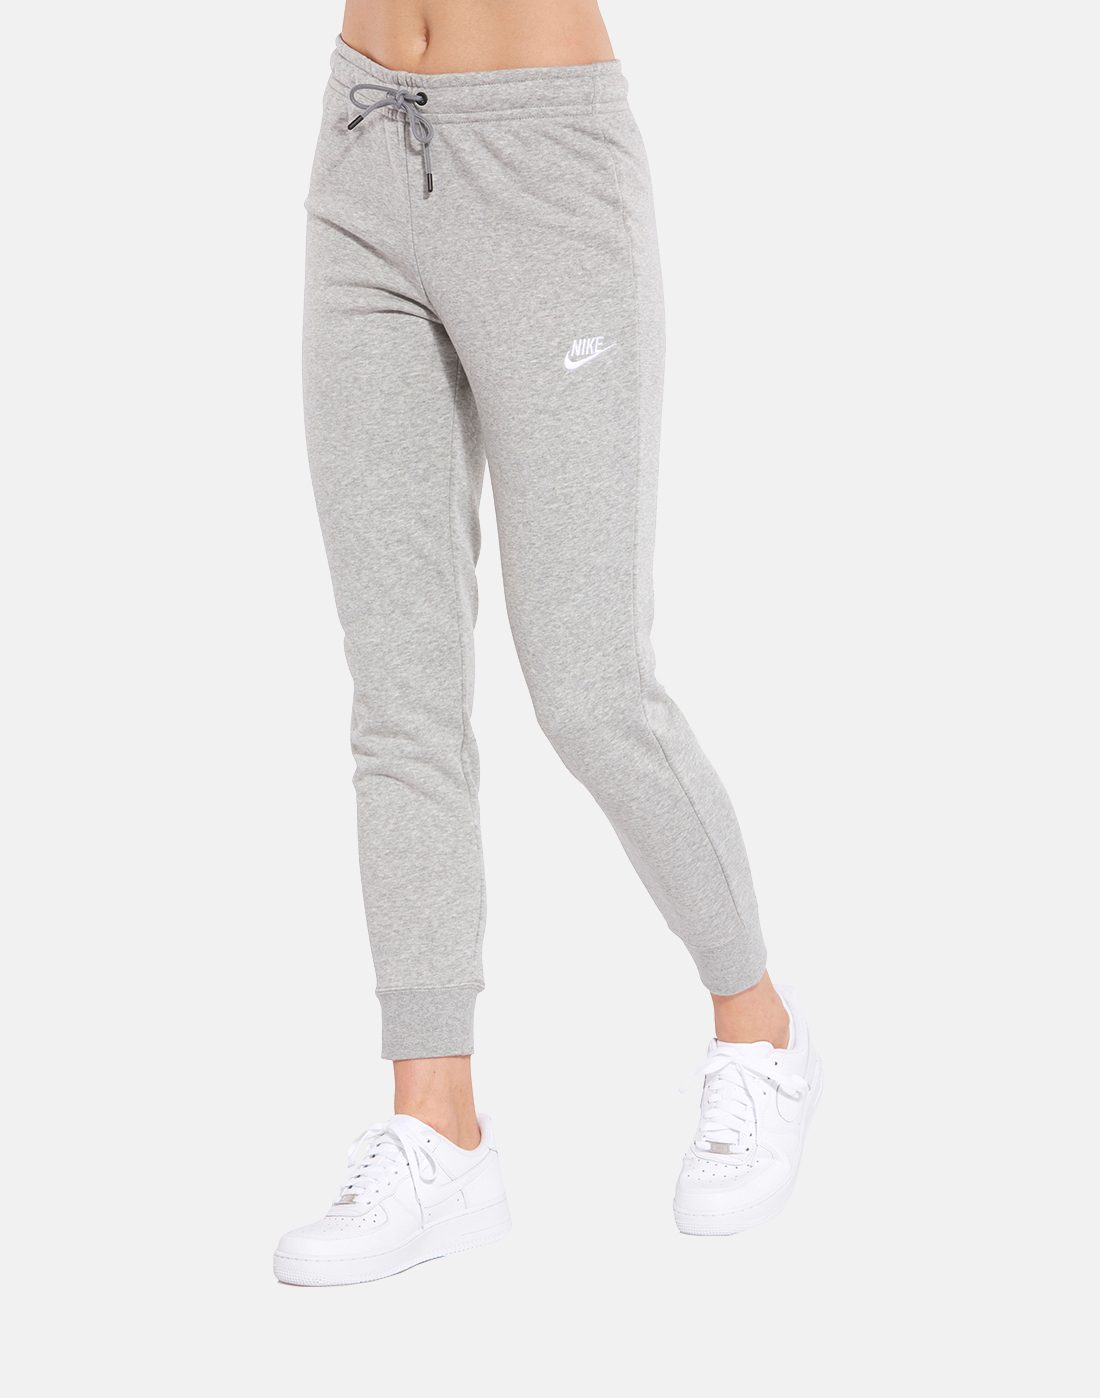 Women's Grey Nike Fleece Pants | Life 